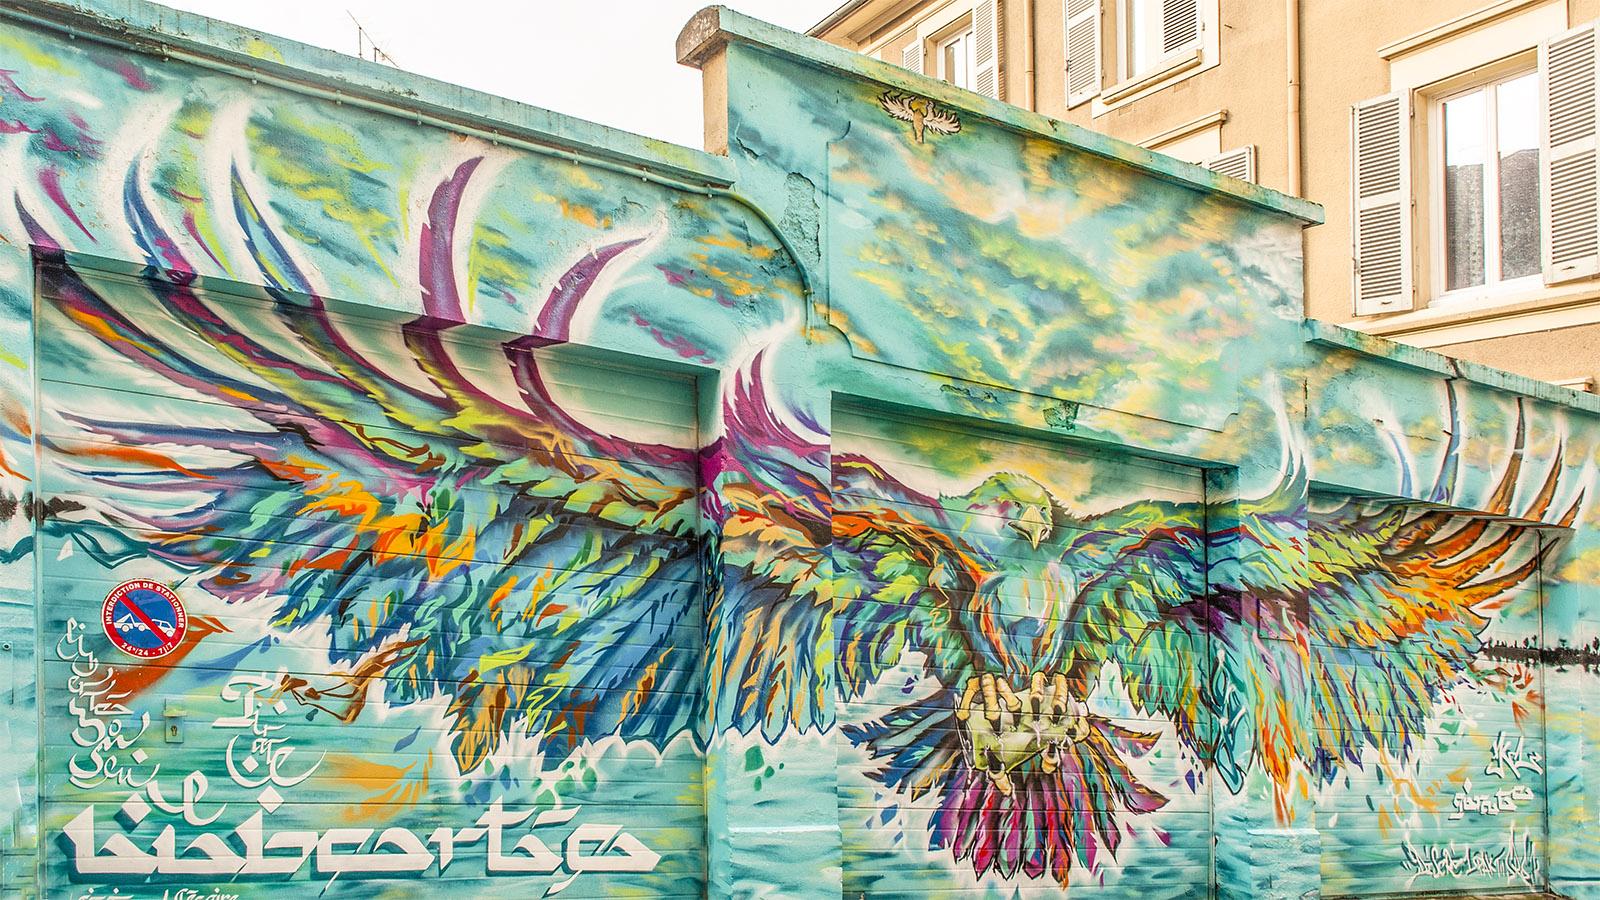 L'aigle (Adler), ein Werk von Srek, Greg & Killah One & 1Pact für das Street Art Fest 2015. Fotoz: Hilke Maunder